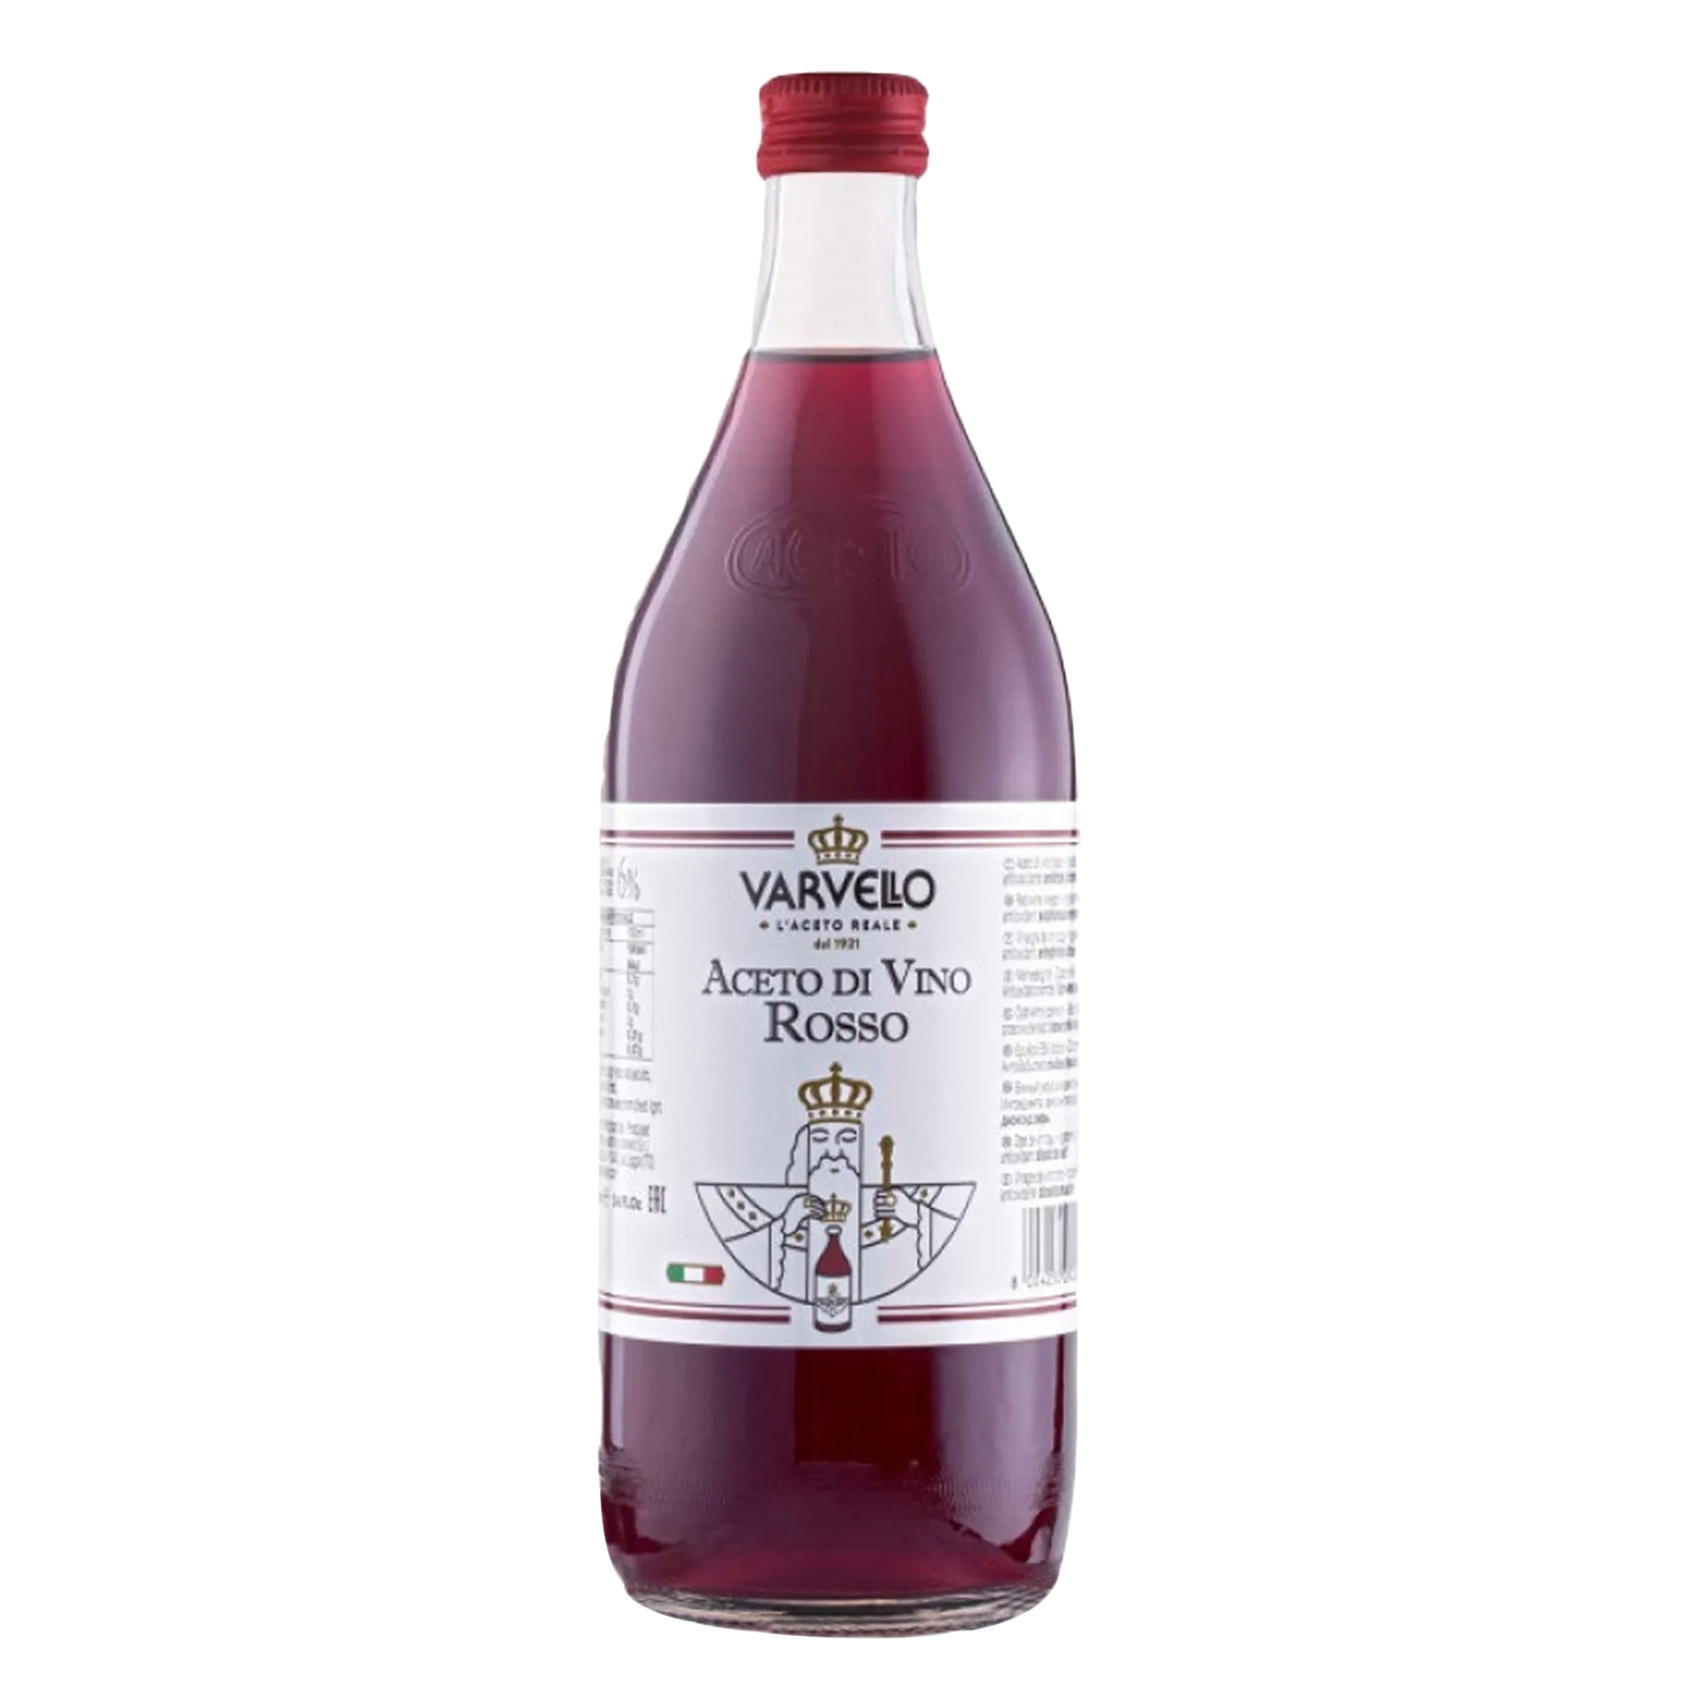 Varvello Aceto Di vino Rosso Red Wine Vinegar 1L